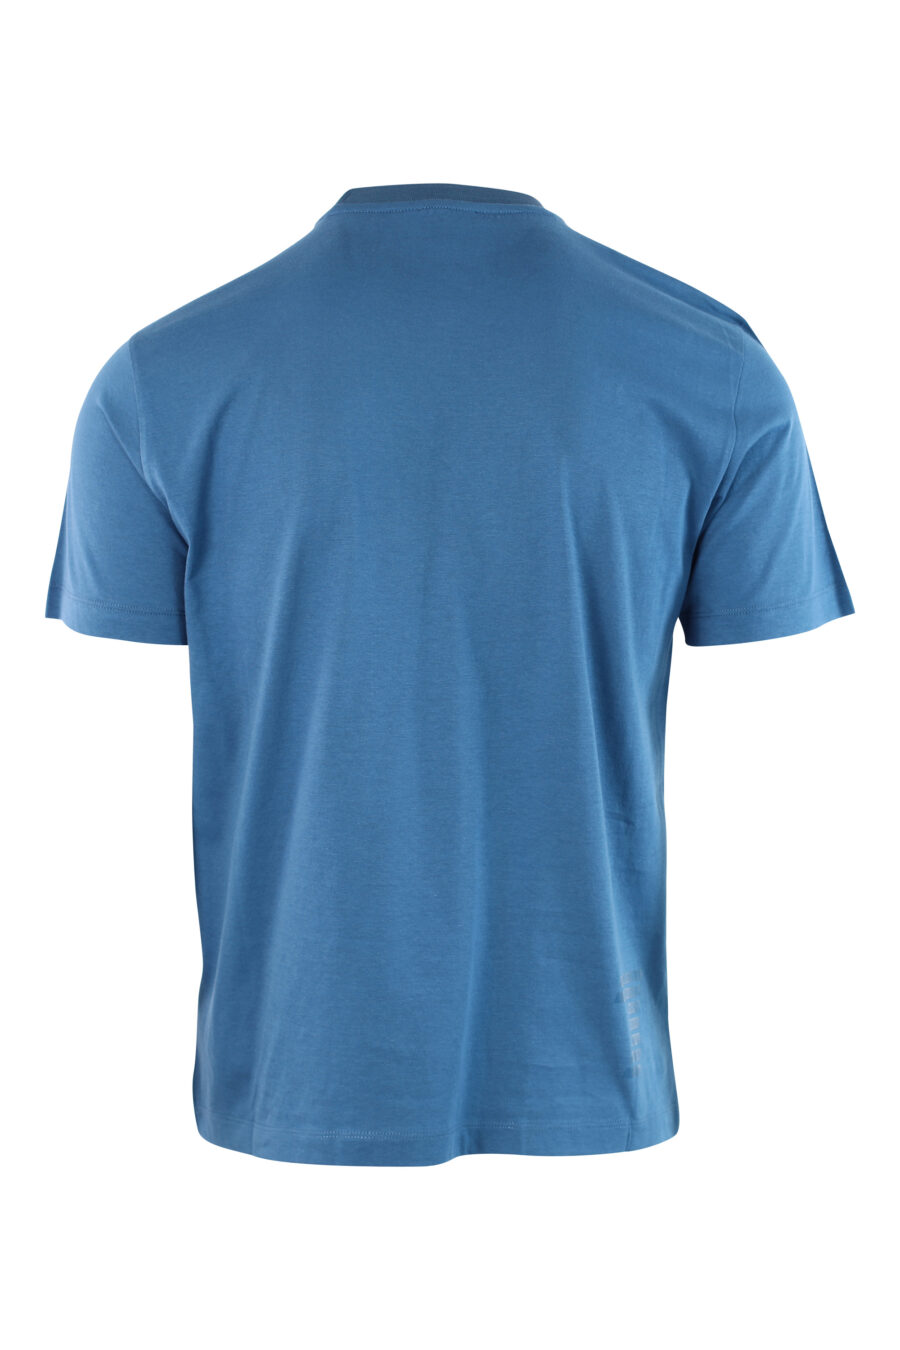 Hellblaues T-Shirt mit Mini-Logo auf Abzeichen - IMG 3798